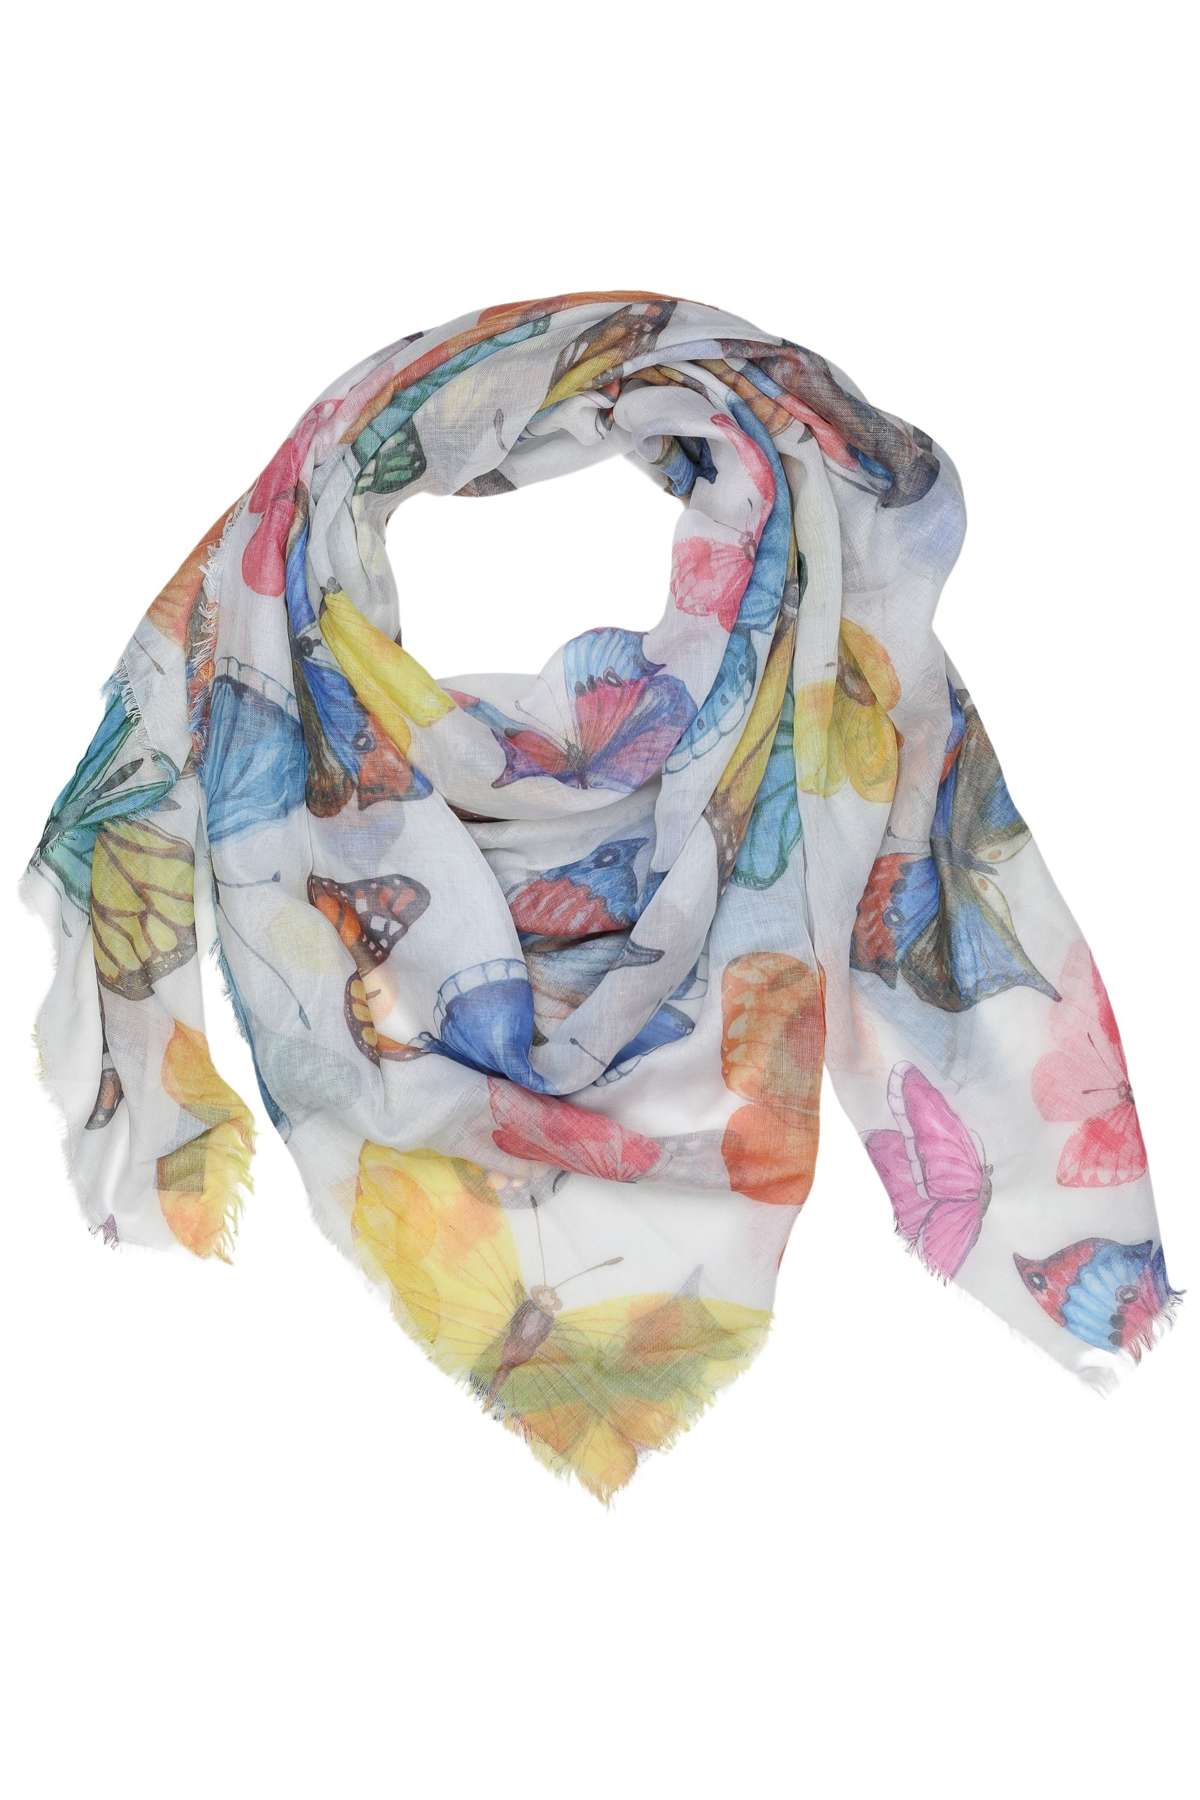 Модный шарф (1 шт.) формата XXL с разноцветными бабочками.